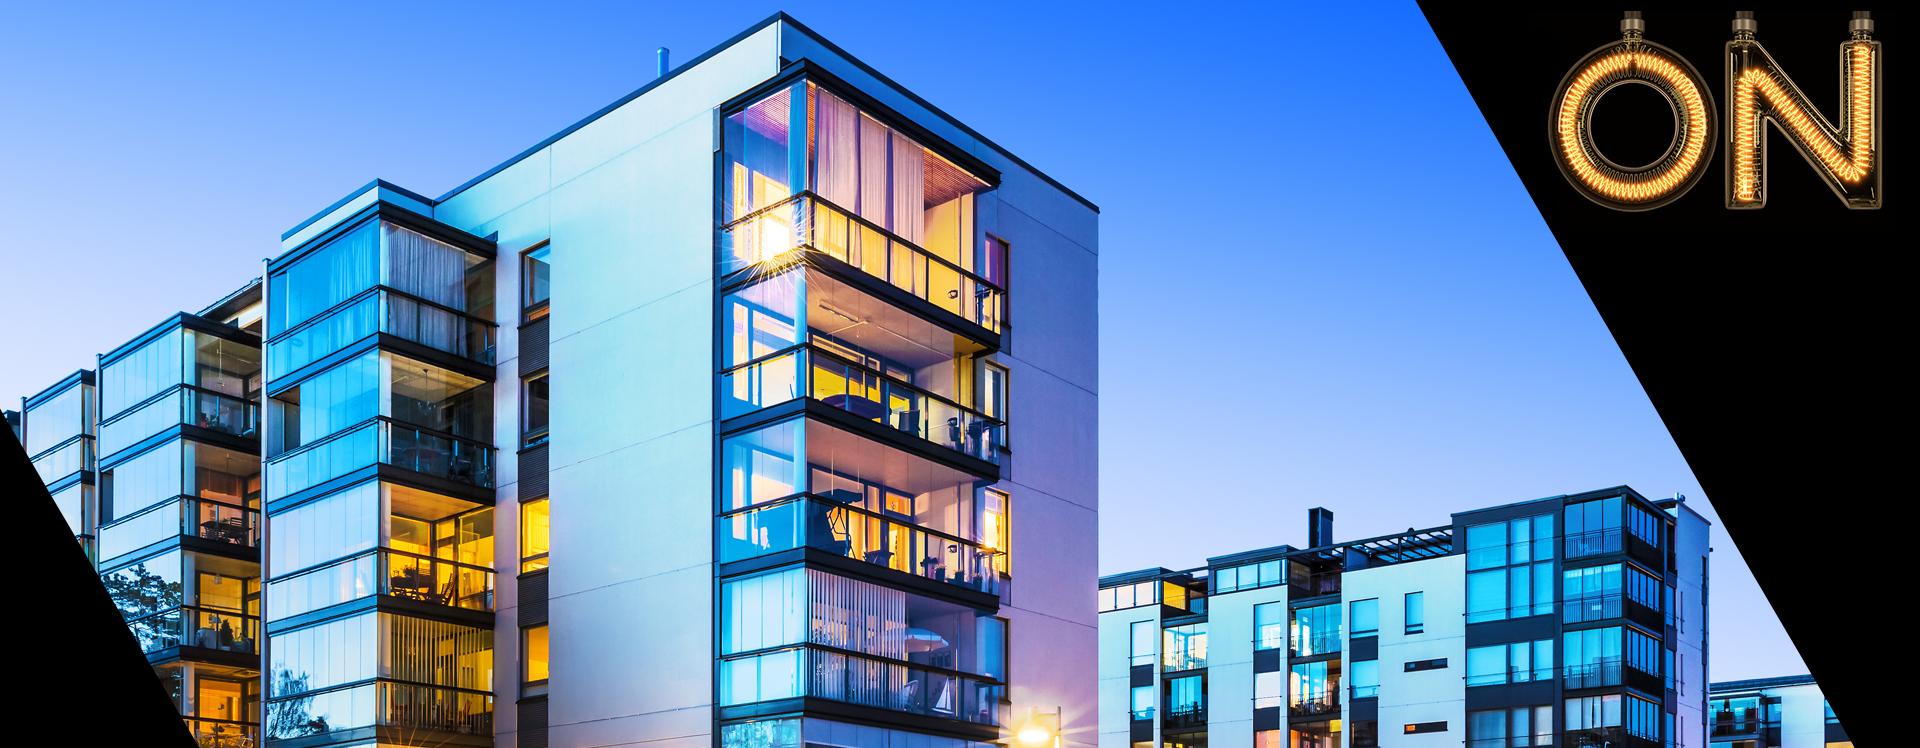 Como avaliar as construtoras ao investir em apartamentos?